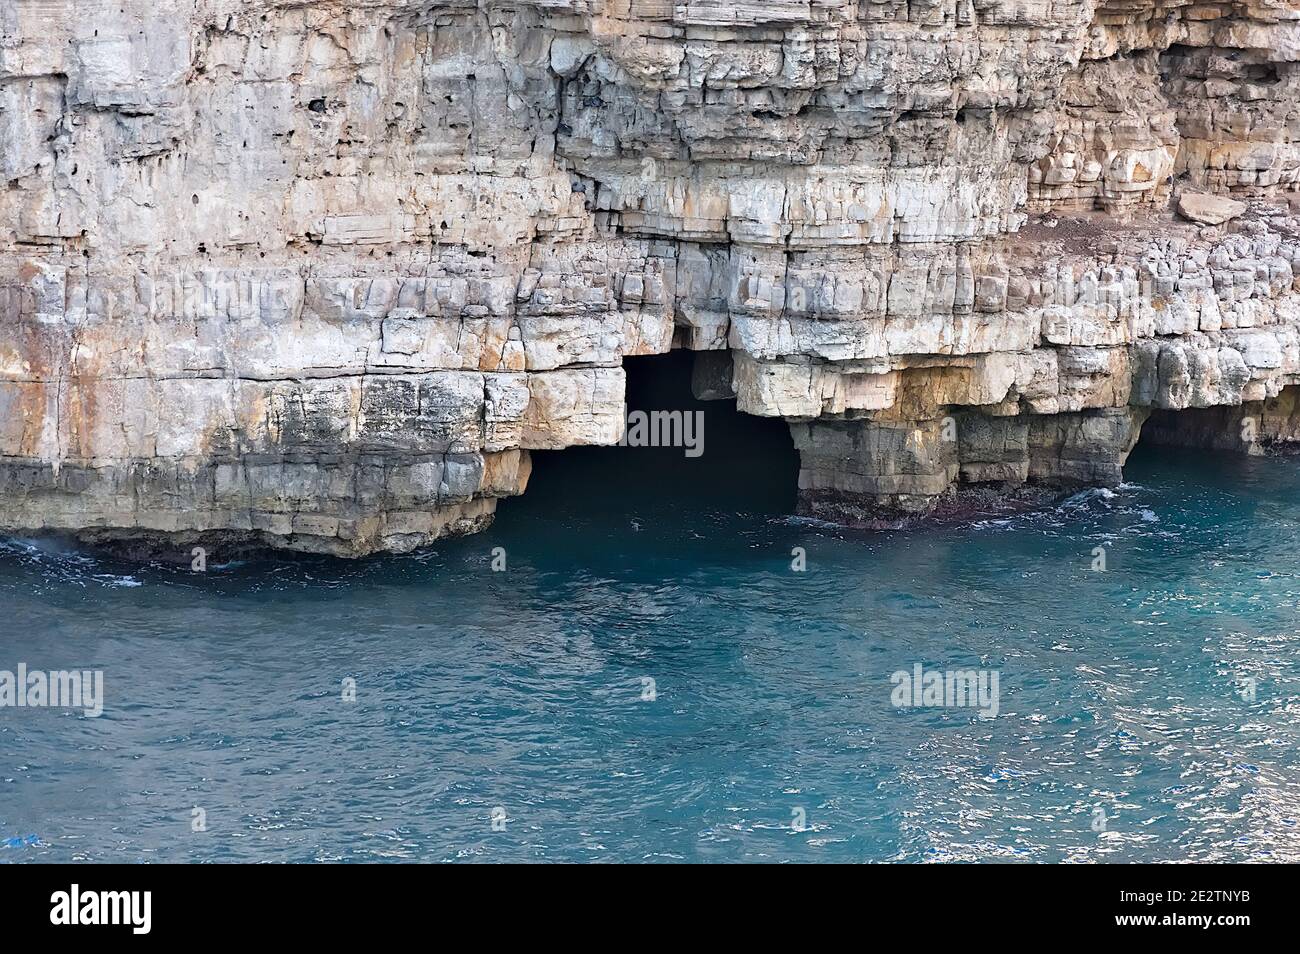 polignano a mare, una bella meta turistica italiana in Puglia. Particolare della costa rocciosa che domina il mare con le sue grotte Foto Stock